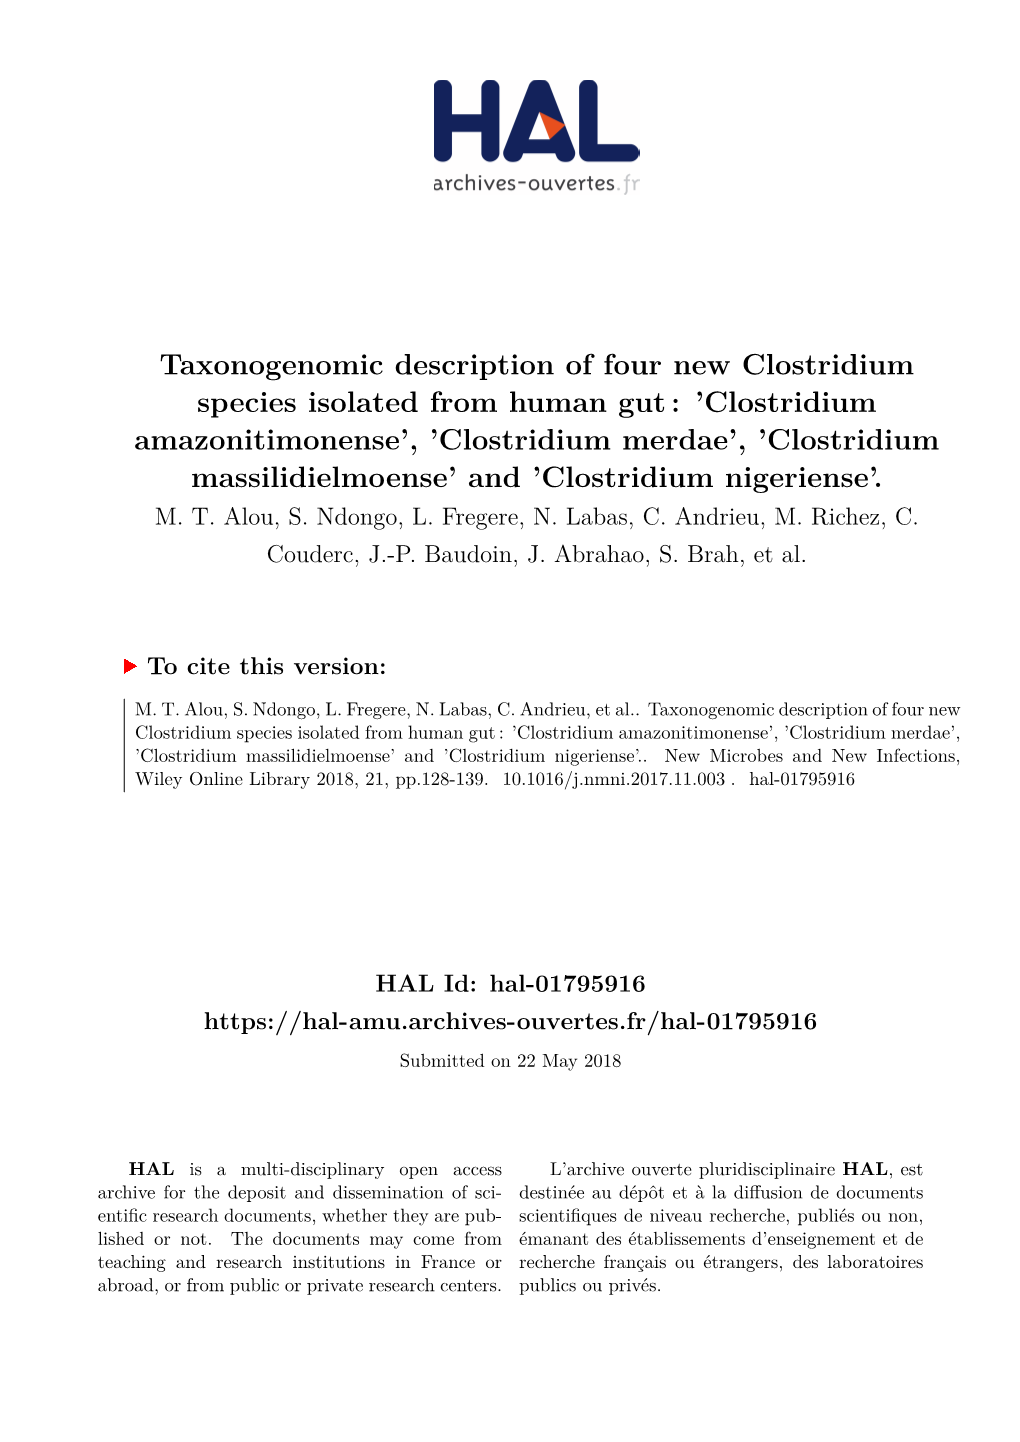 Clostridium Amazonitimonense’, ’Clostridium Merdae’, ’Clostridium Massilidielmoense’ and ’Clostridium Nigeriense’